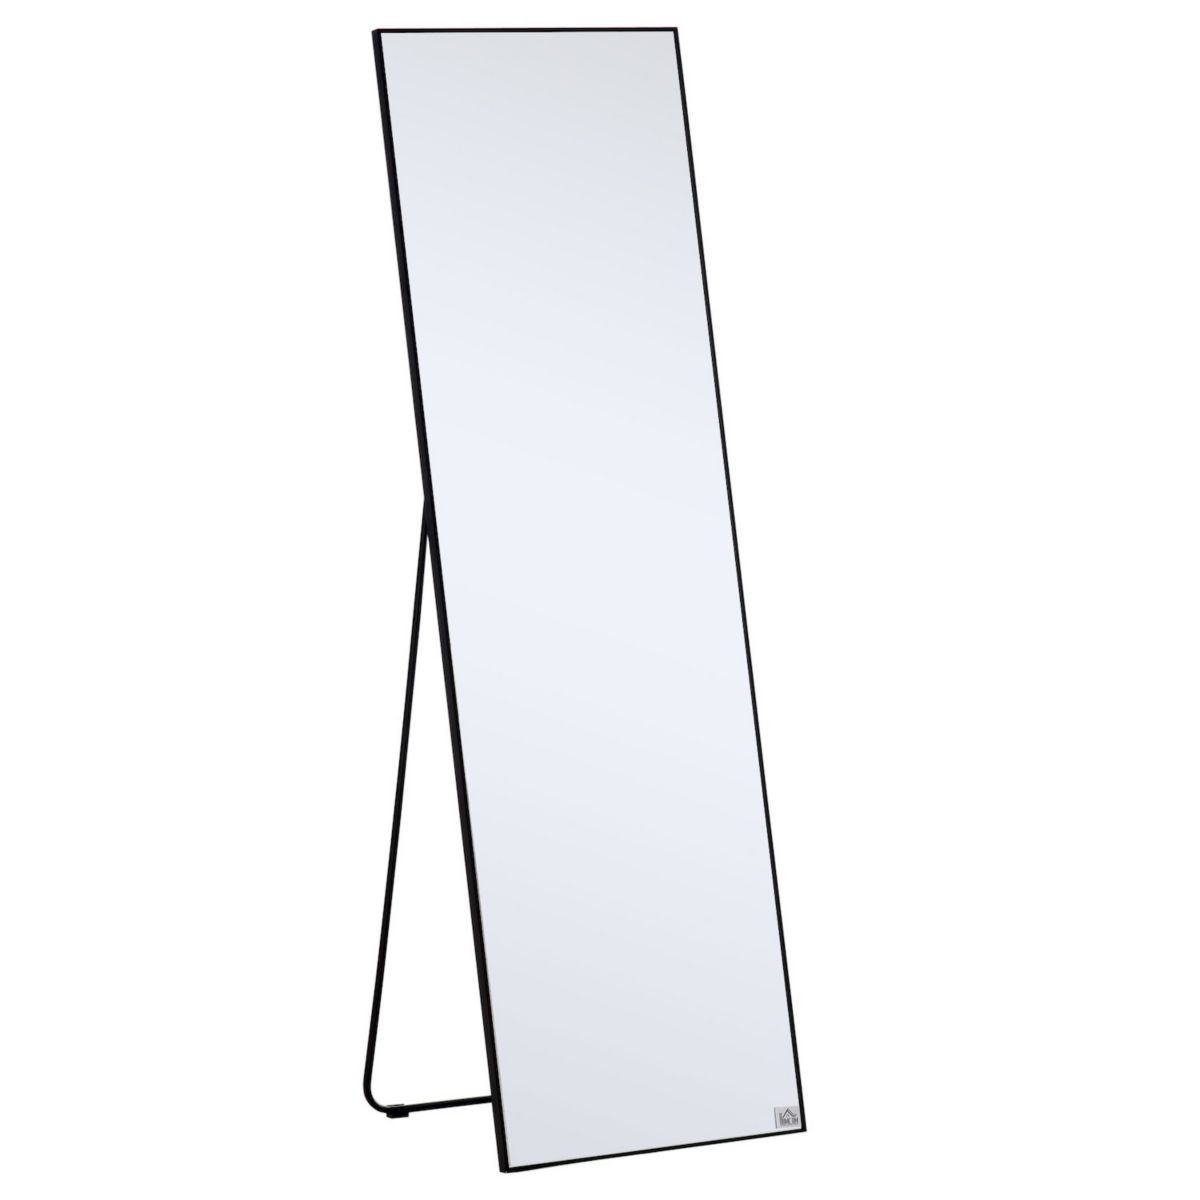 HOMCOM стеклянное зеркало в полный рост, отдельностоящее или настенное зеркало для платья для спальни, гостиной, ванной комнаты, черное HomCom